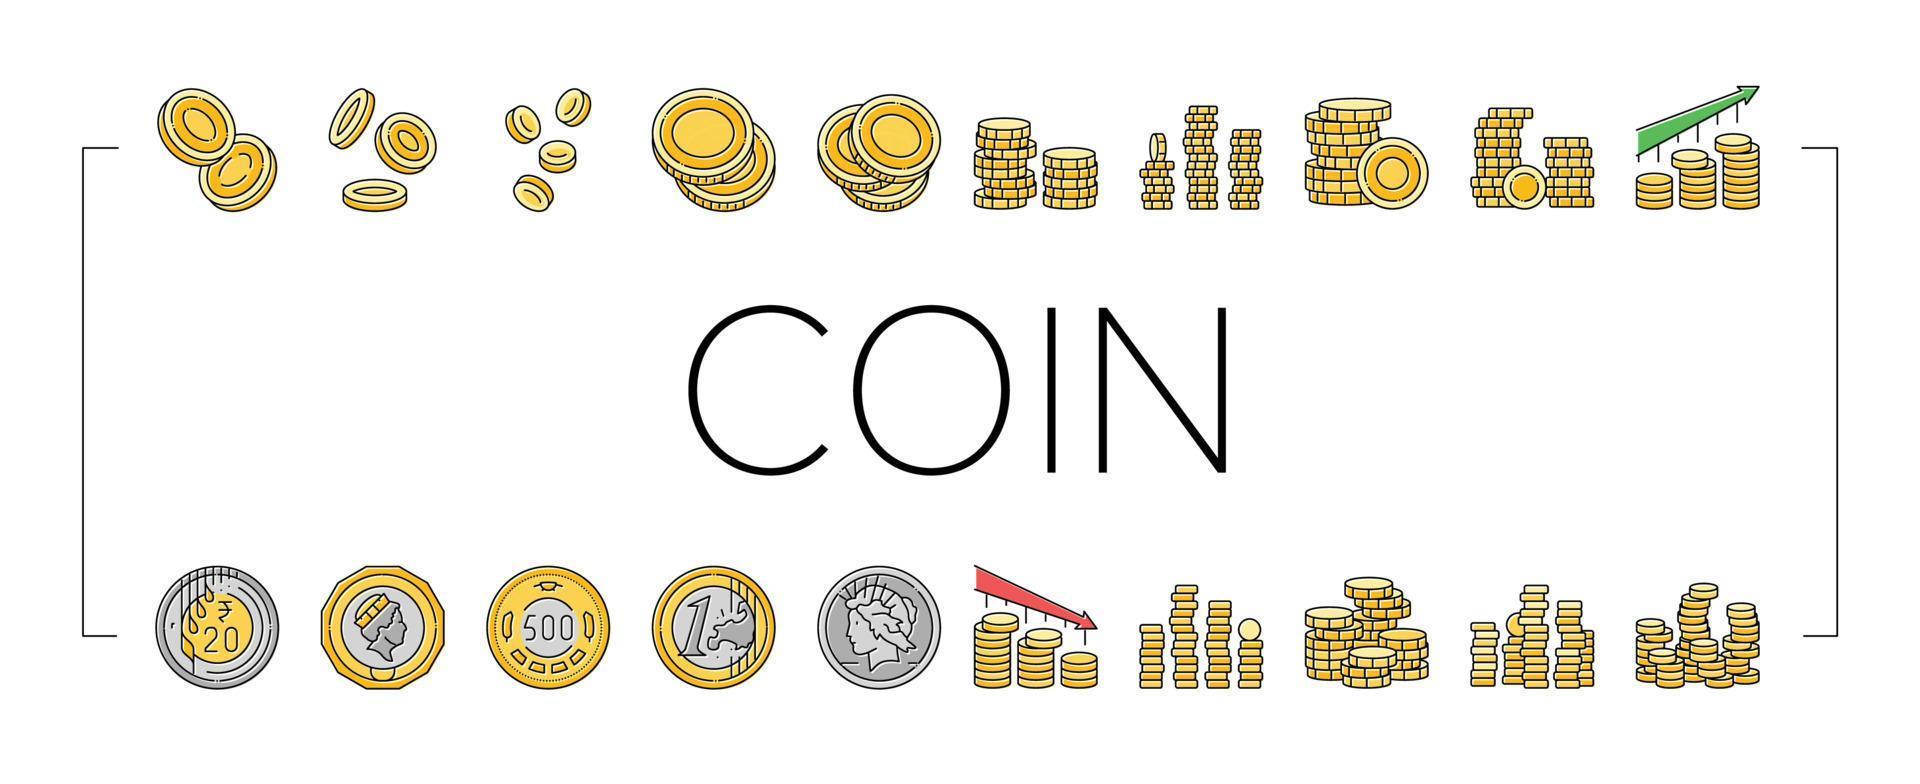 coin gold money cash bank icons set vector